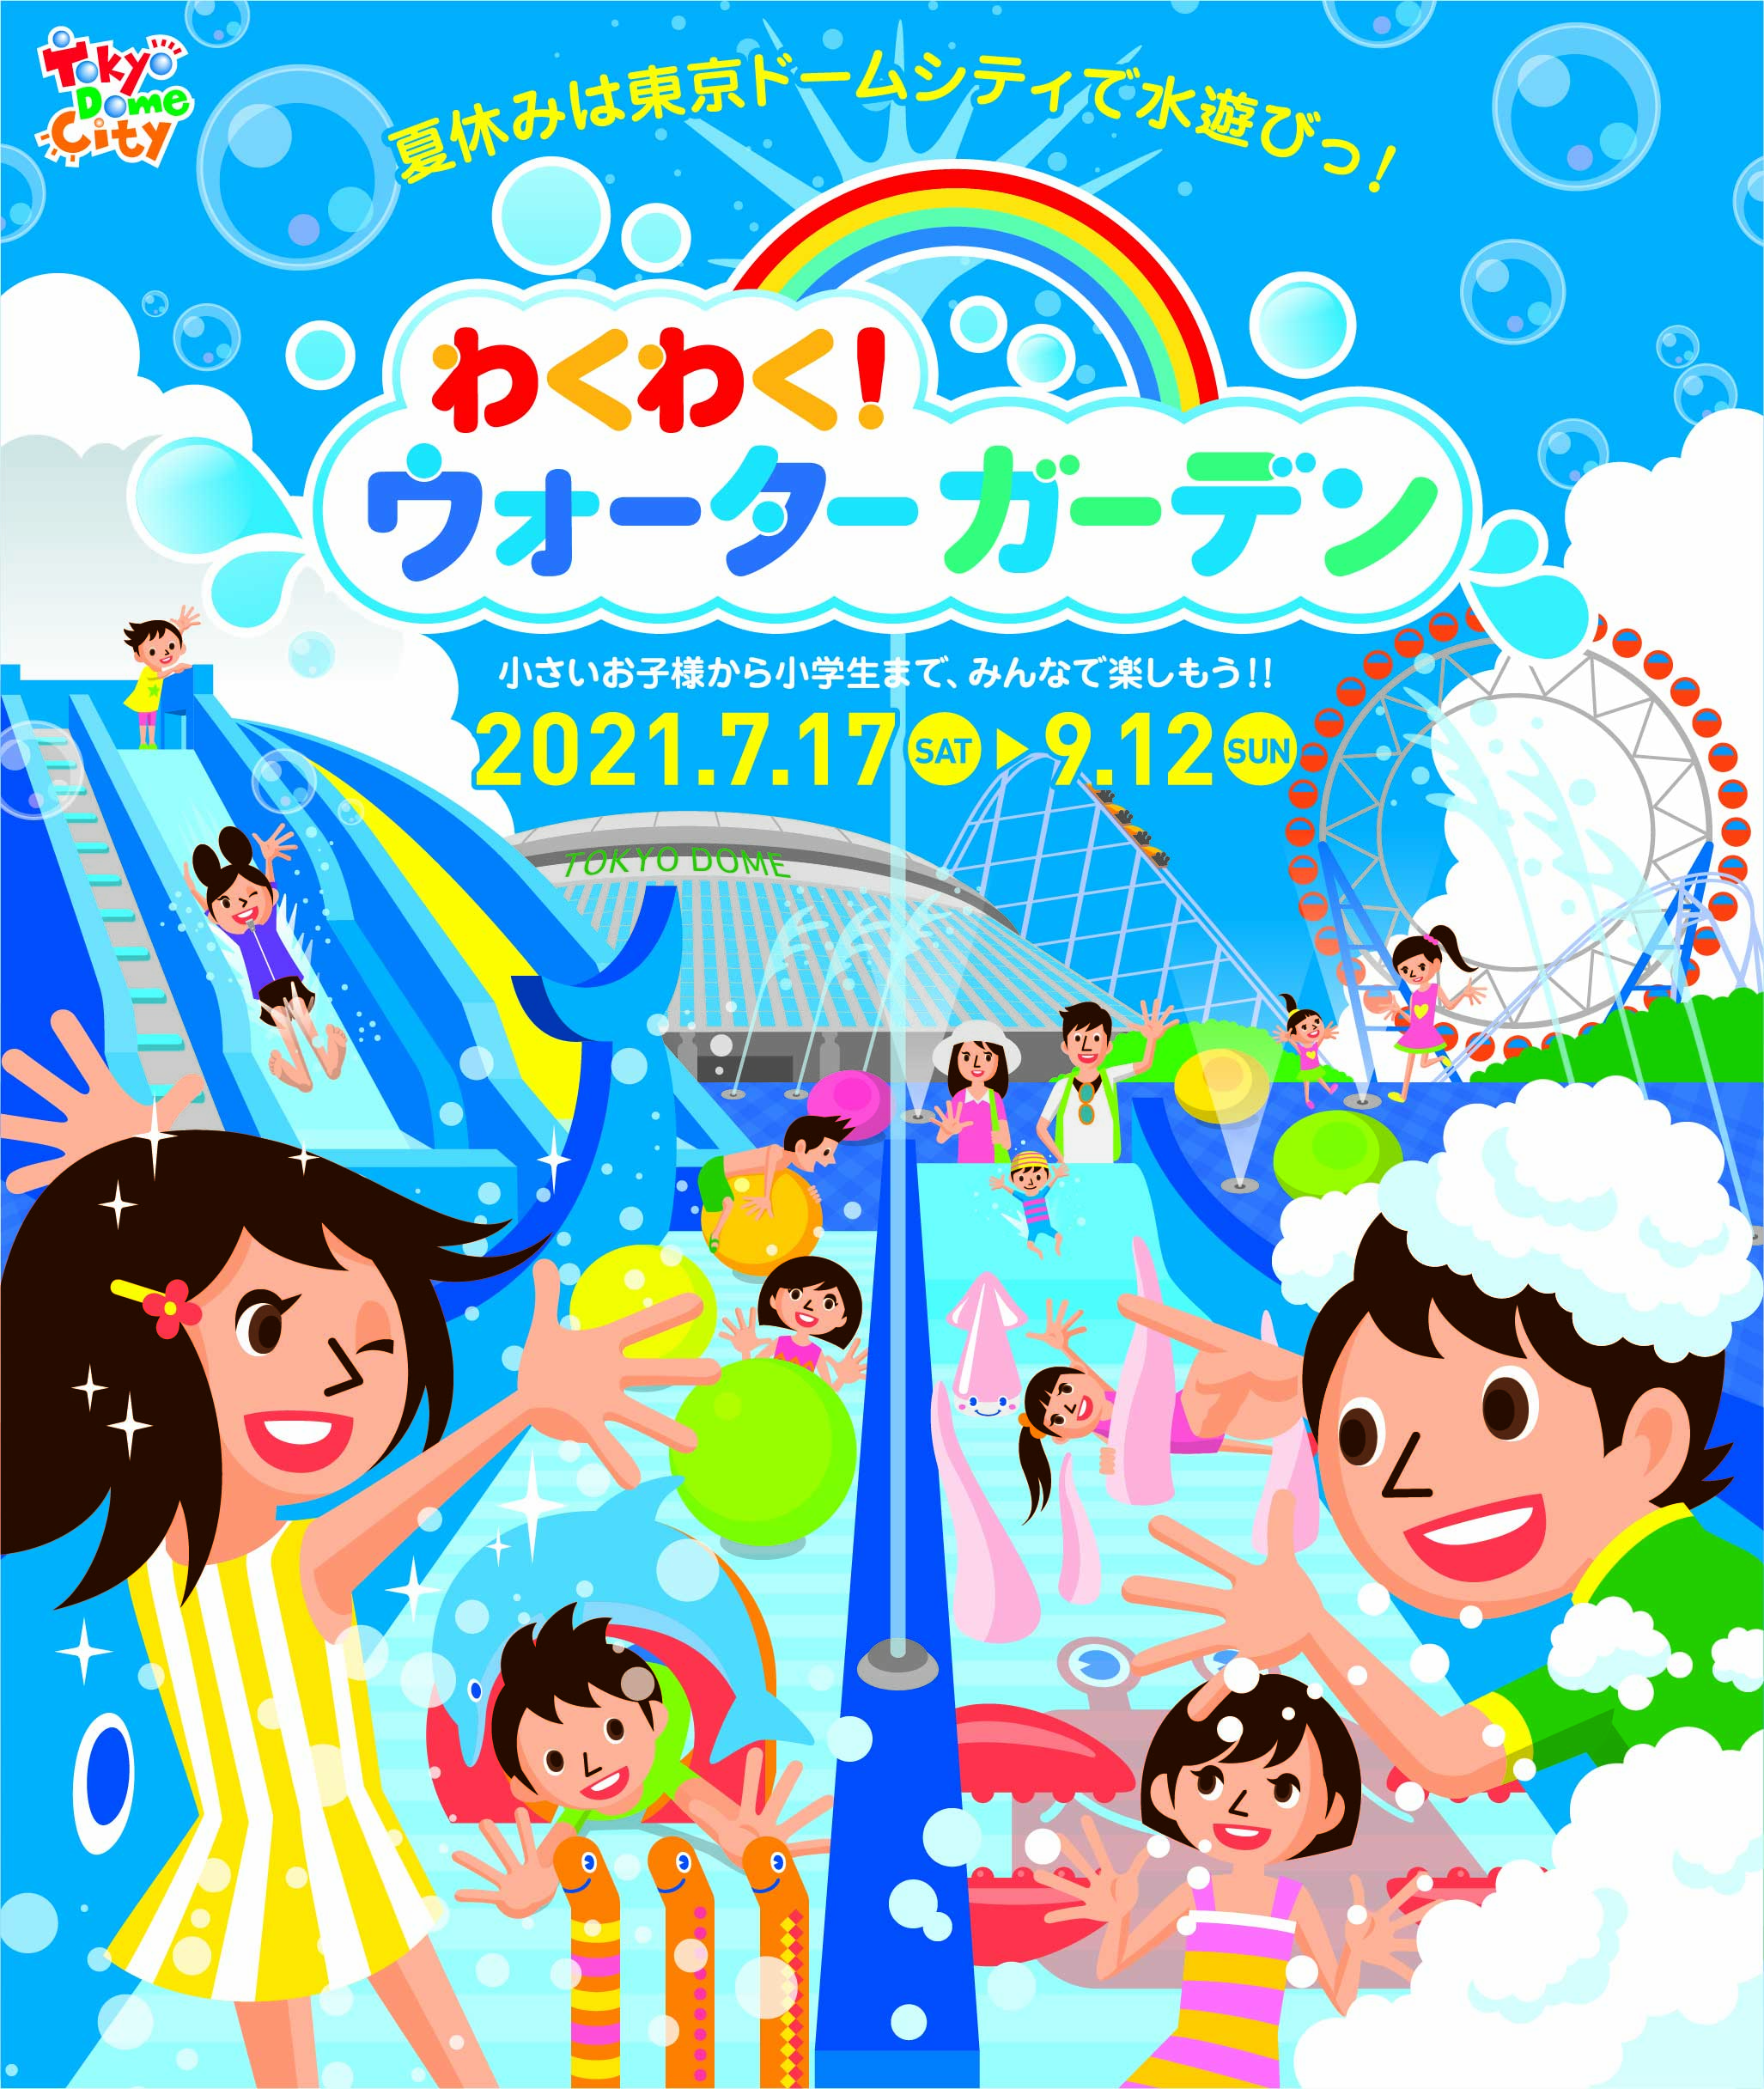 東京ドームシティ 夏休み恒例 東京ドームシティに水遊び広場が登場 わくわく ウォーターガーデン 開催 株式会社東京ドームのプレスリリース